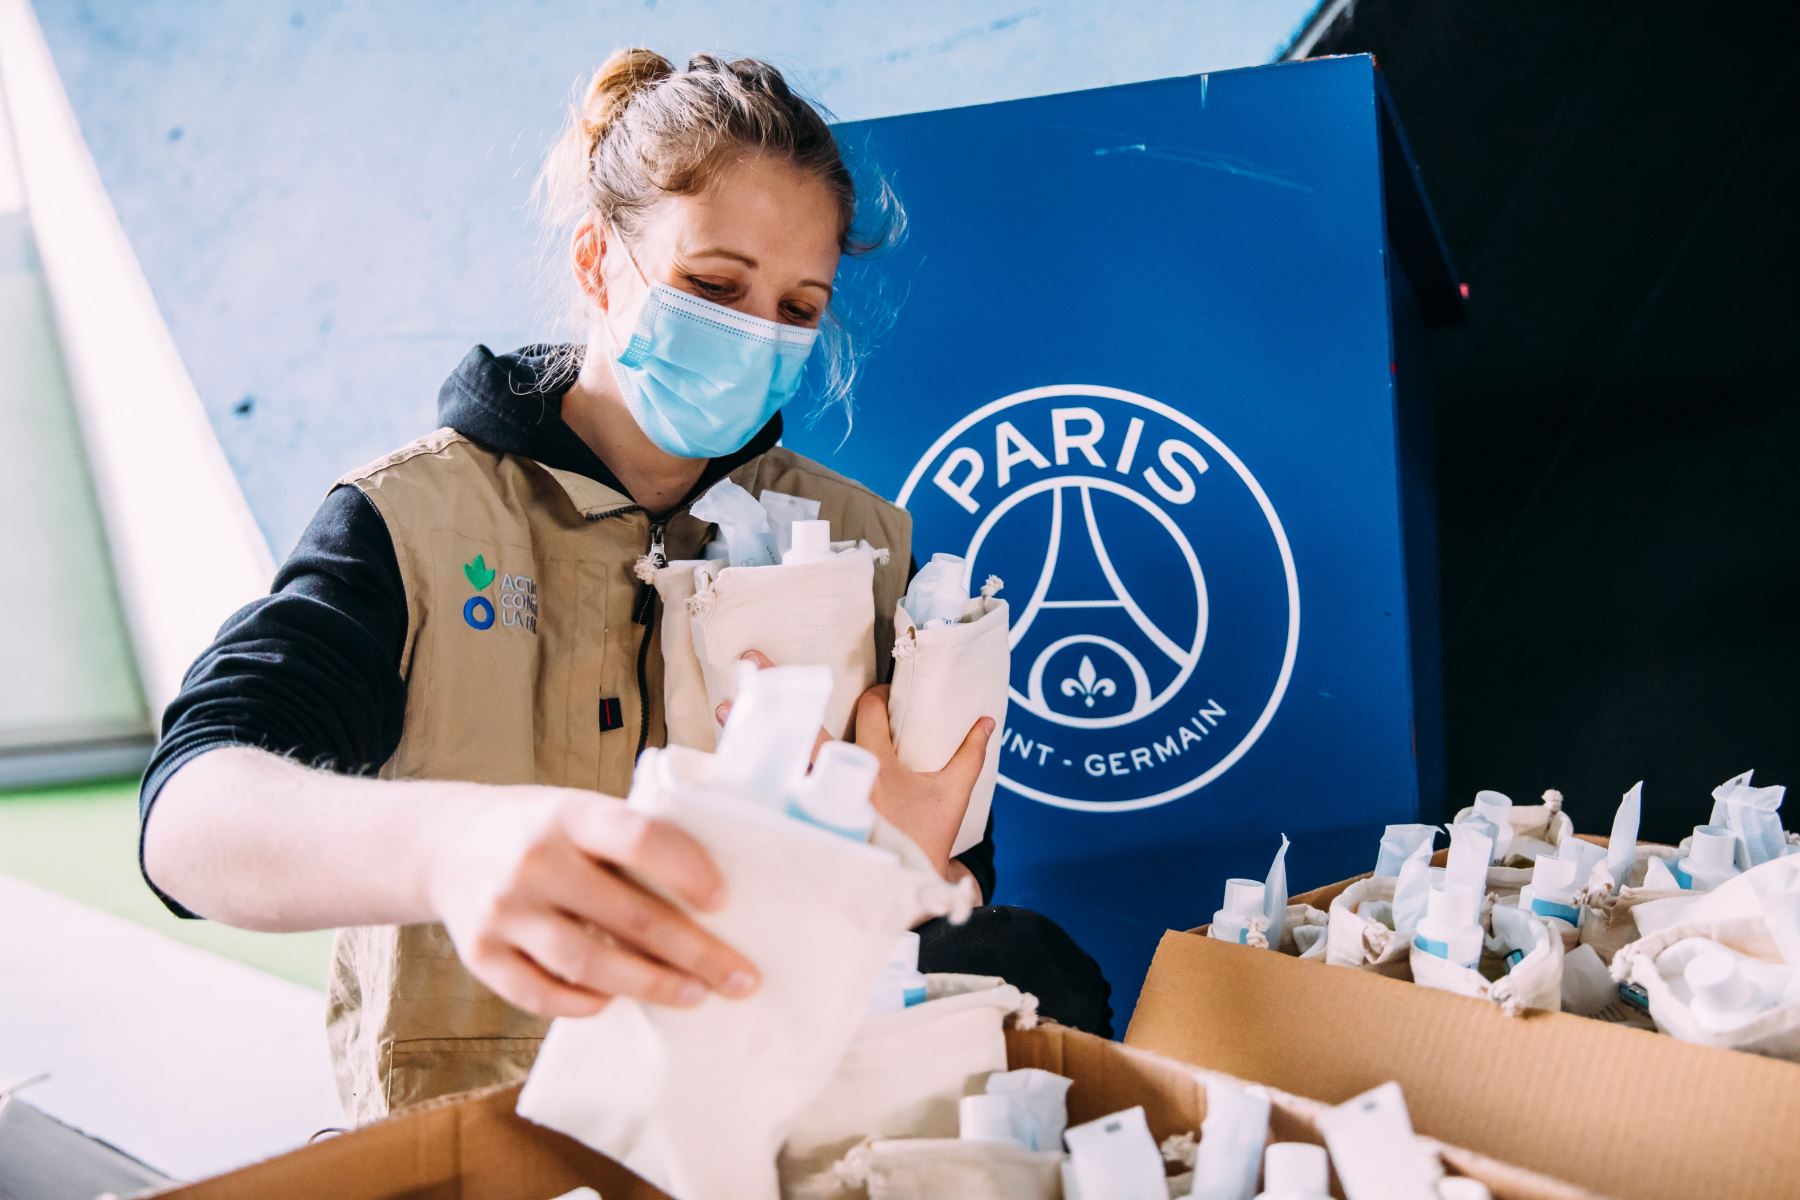 El París Saint-Germain realizó un donativo de 100,000 euros a favor de la organización humanitaria Acción contra el Hambre.